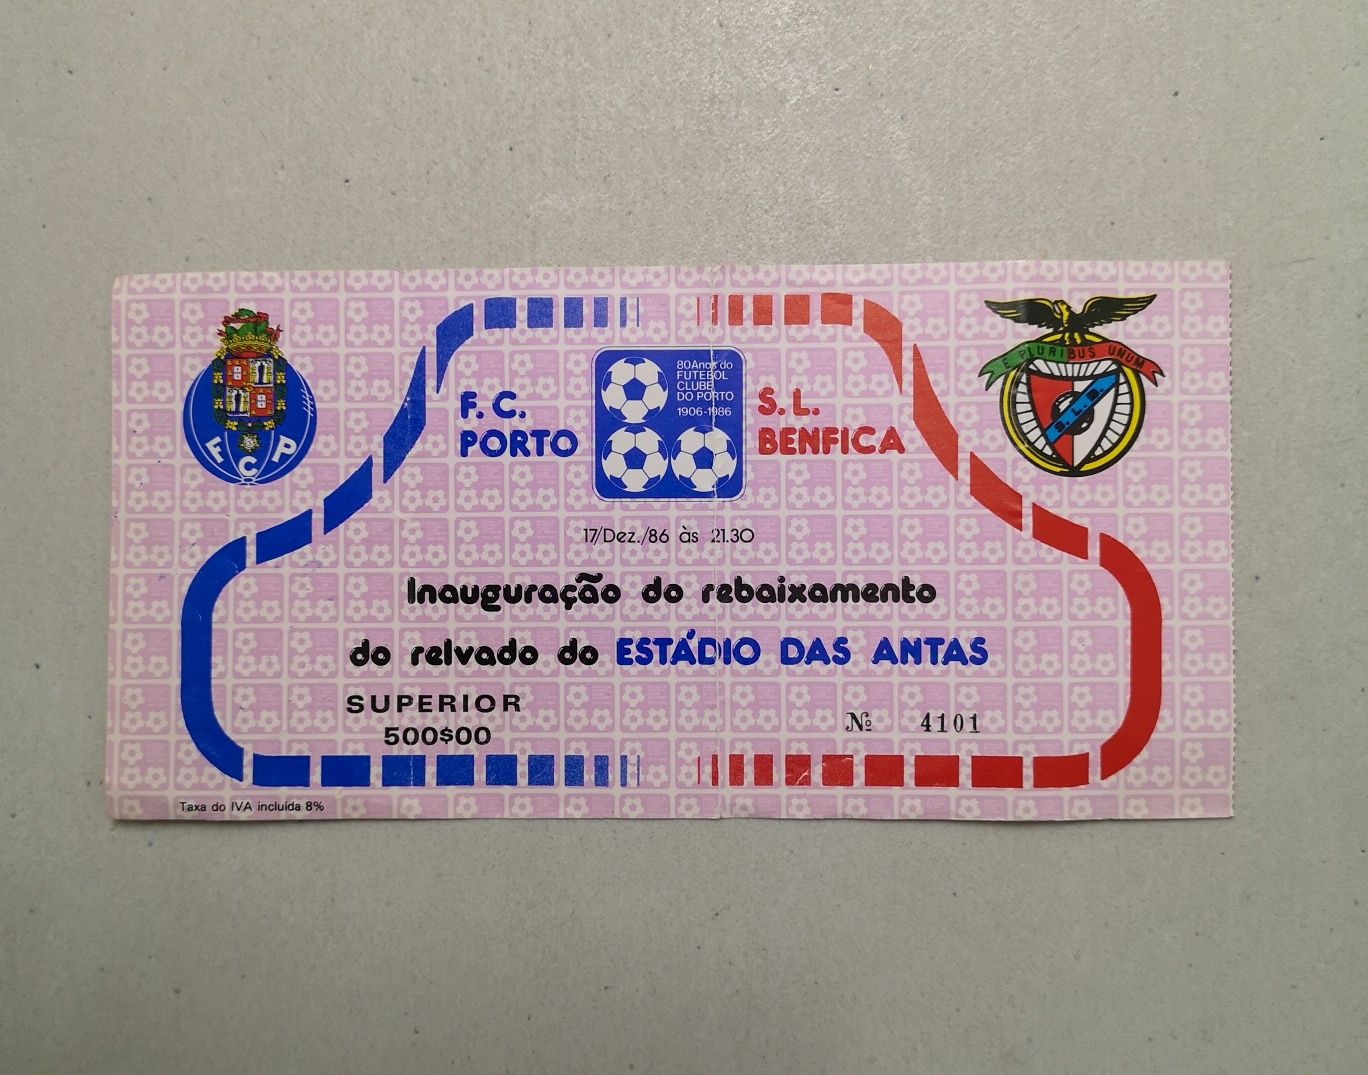 Bilhete da inauguração do rebaixamento do Estádio das Antas (1986)